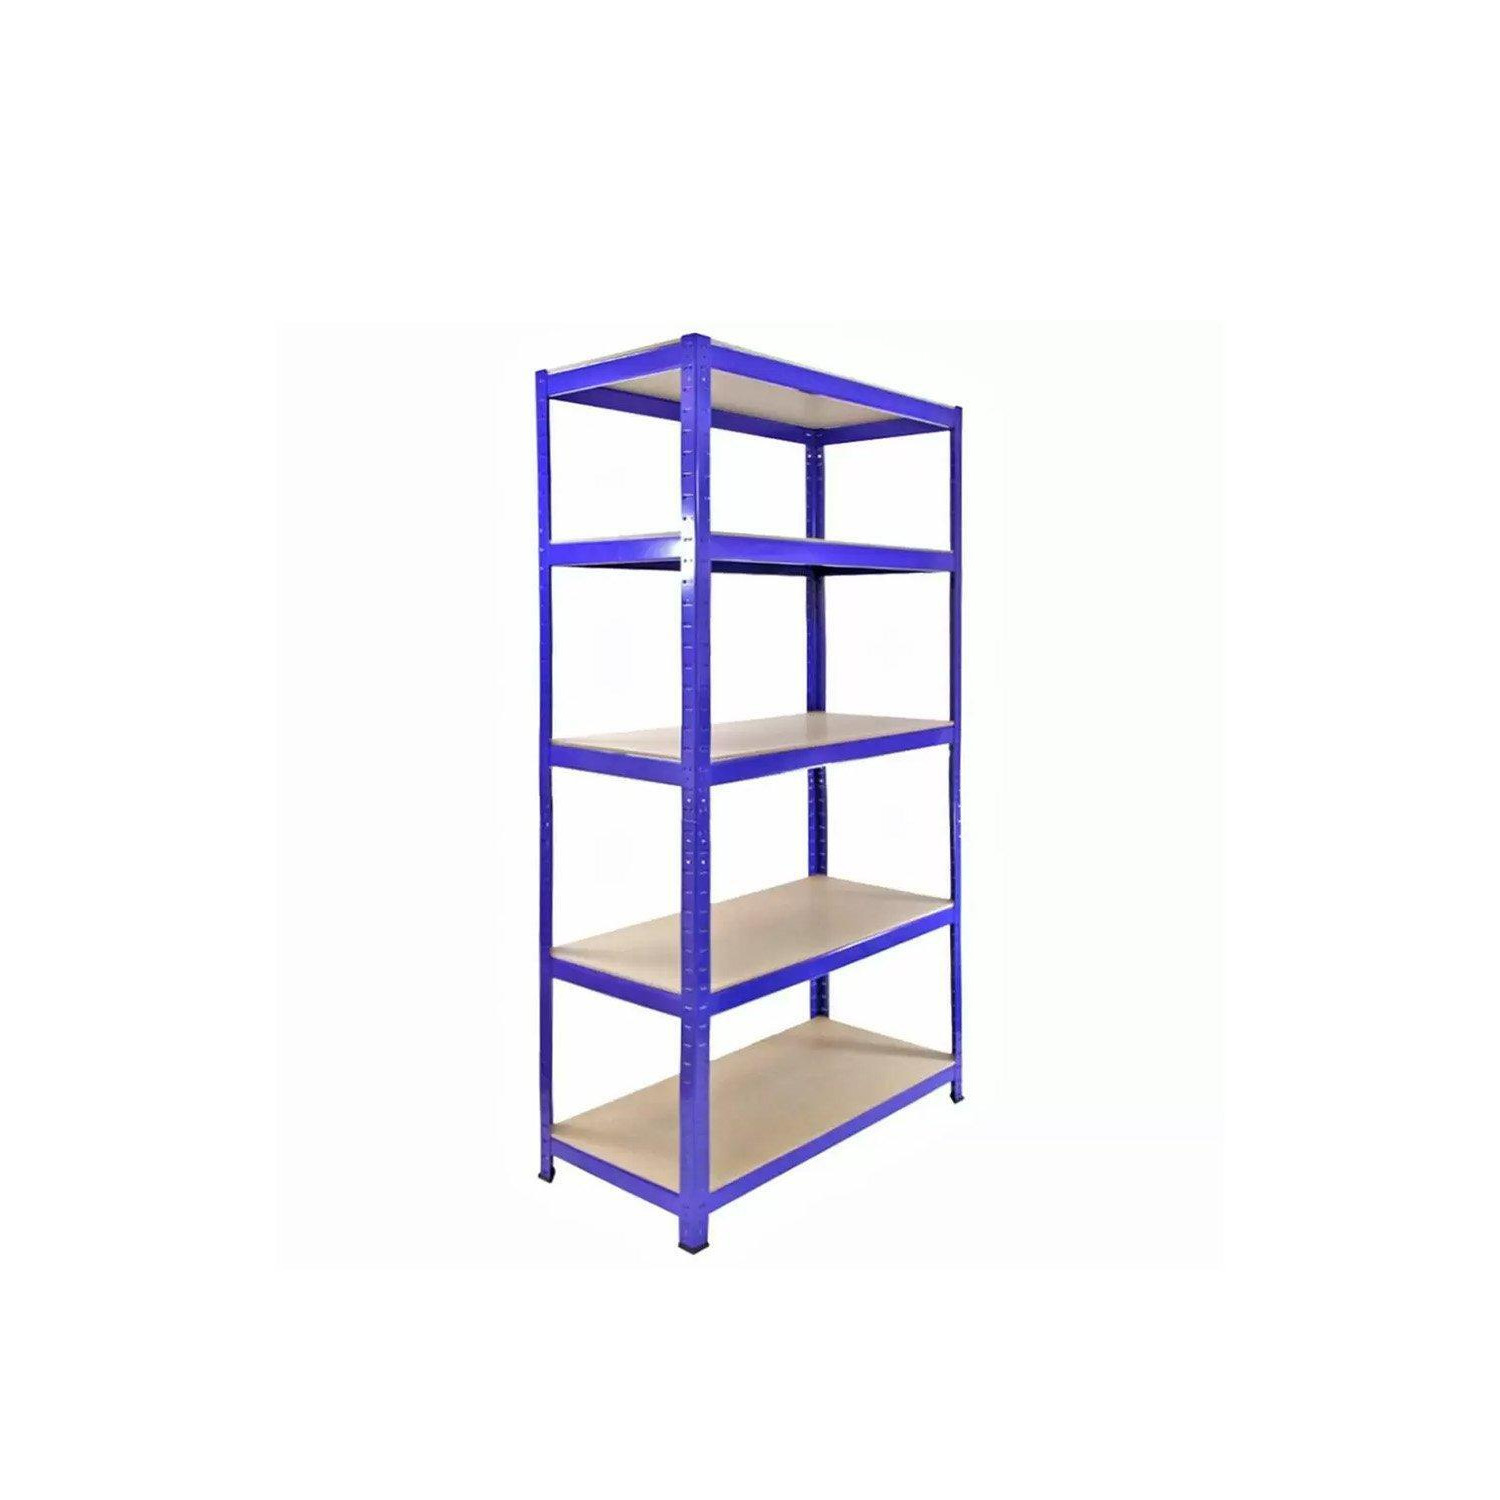 T-Rax Metal Storage Shelves, Blue, 90cm W, 45cm D - image 1